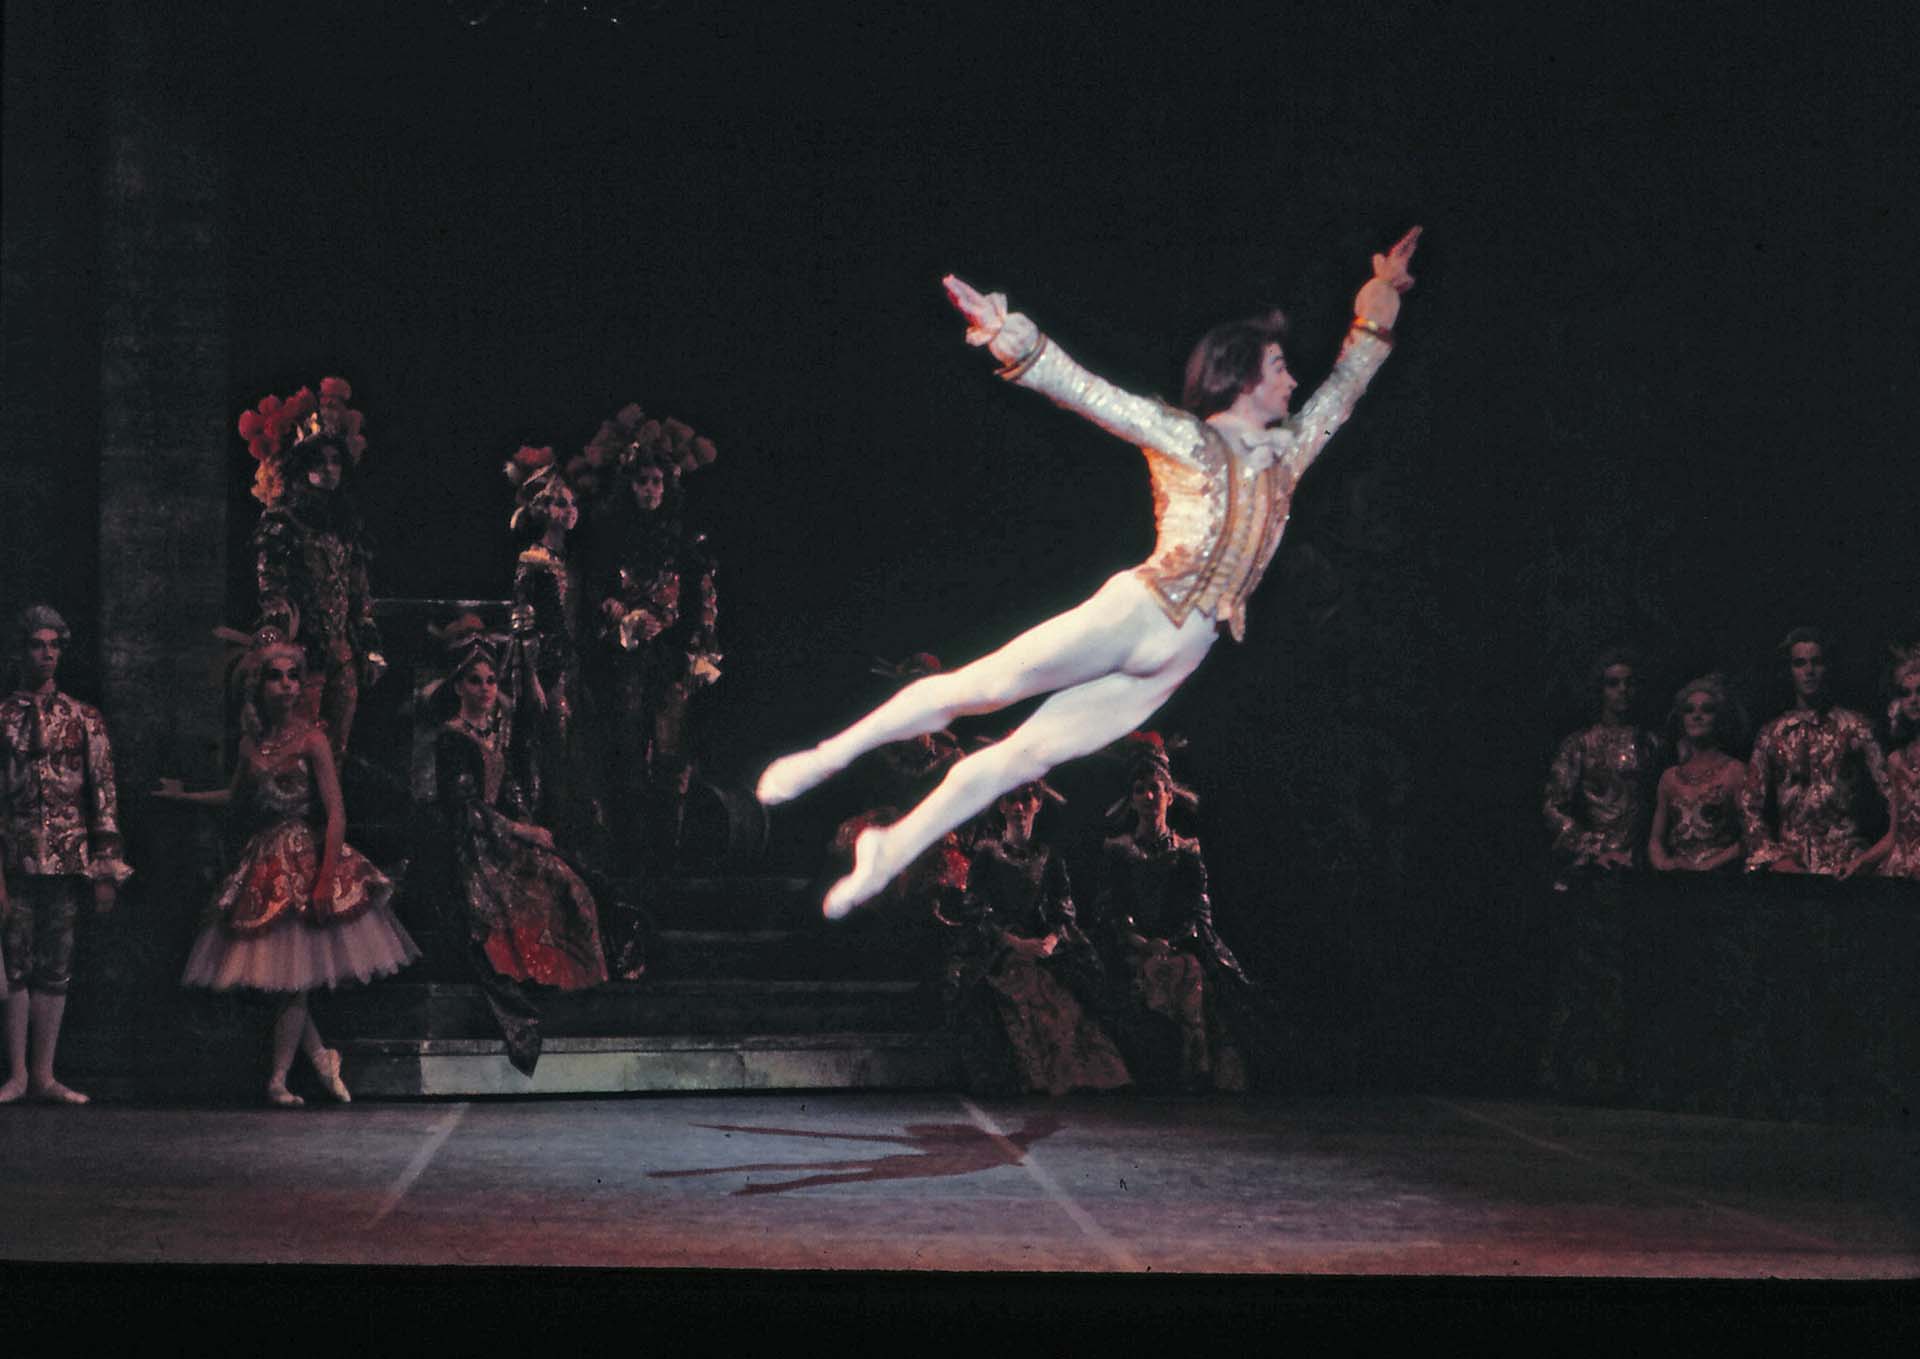 Rudolf Nureyev tenía 23 años y era una de las estrellas del Ballet Kirov de la Unión Soviética, cuando pidió asilo político en Francia. (Foto: Jack Mitchell/Getty Images)